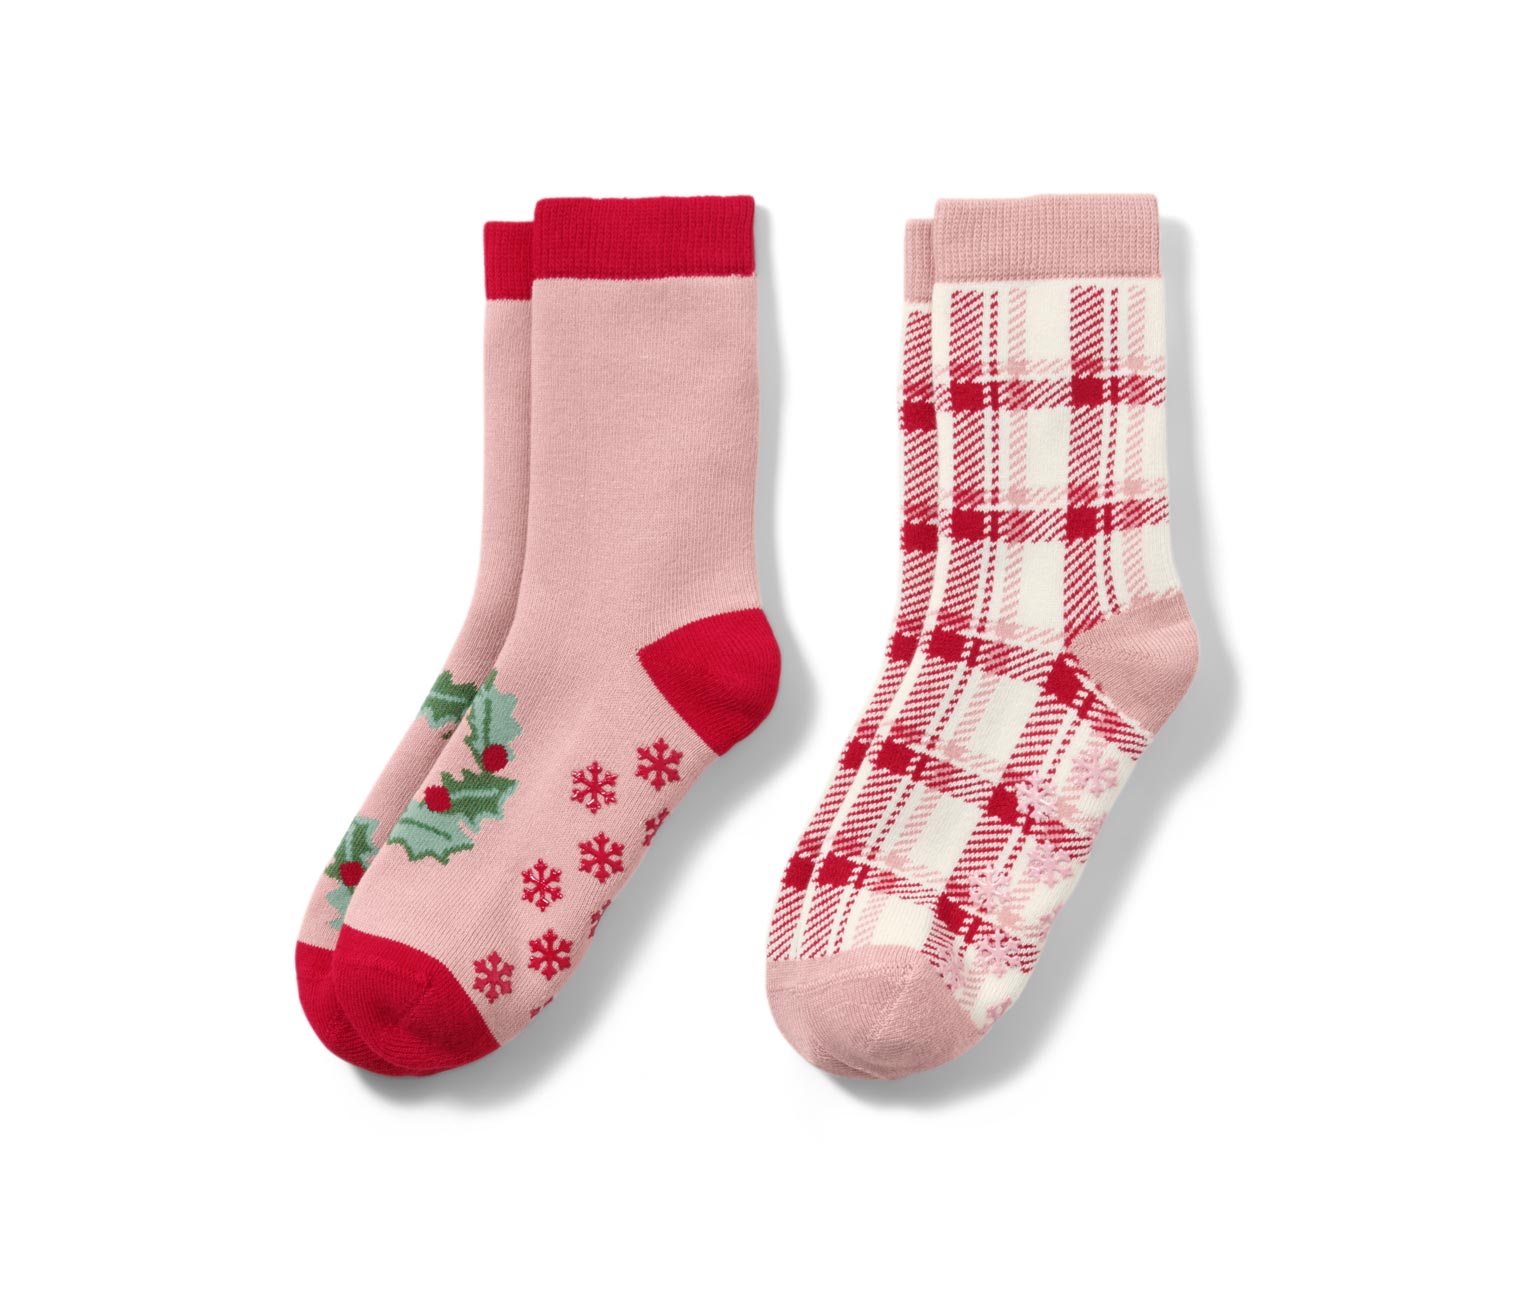 Detské protišmykové ponožky so srdiečkovým žakárovým vzorom, 2 páry 651224  z e-shopu Tchibo.sk